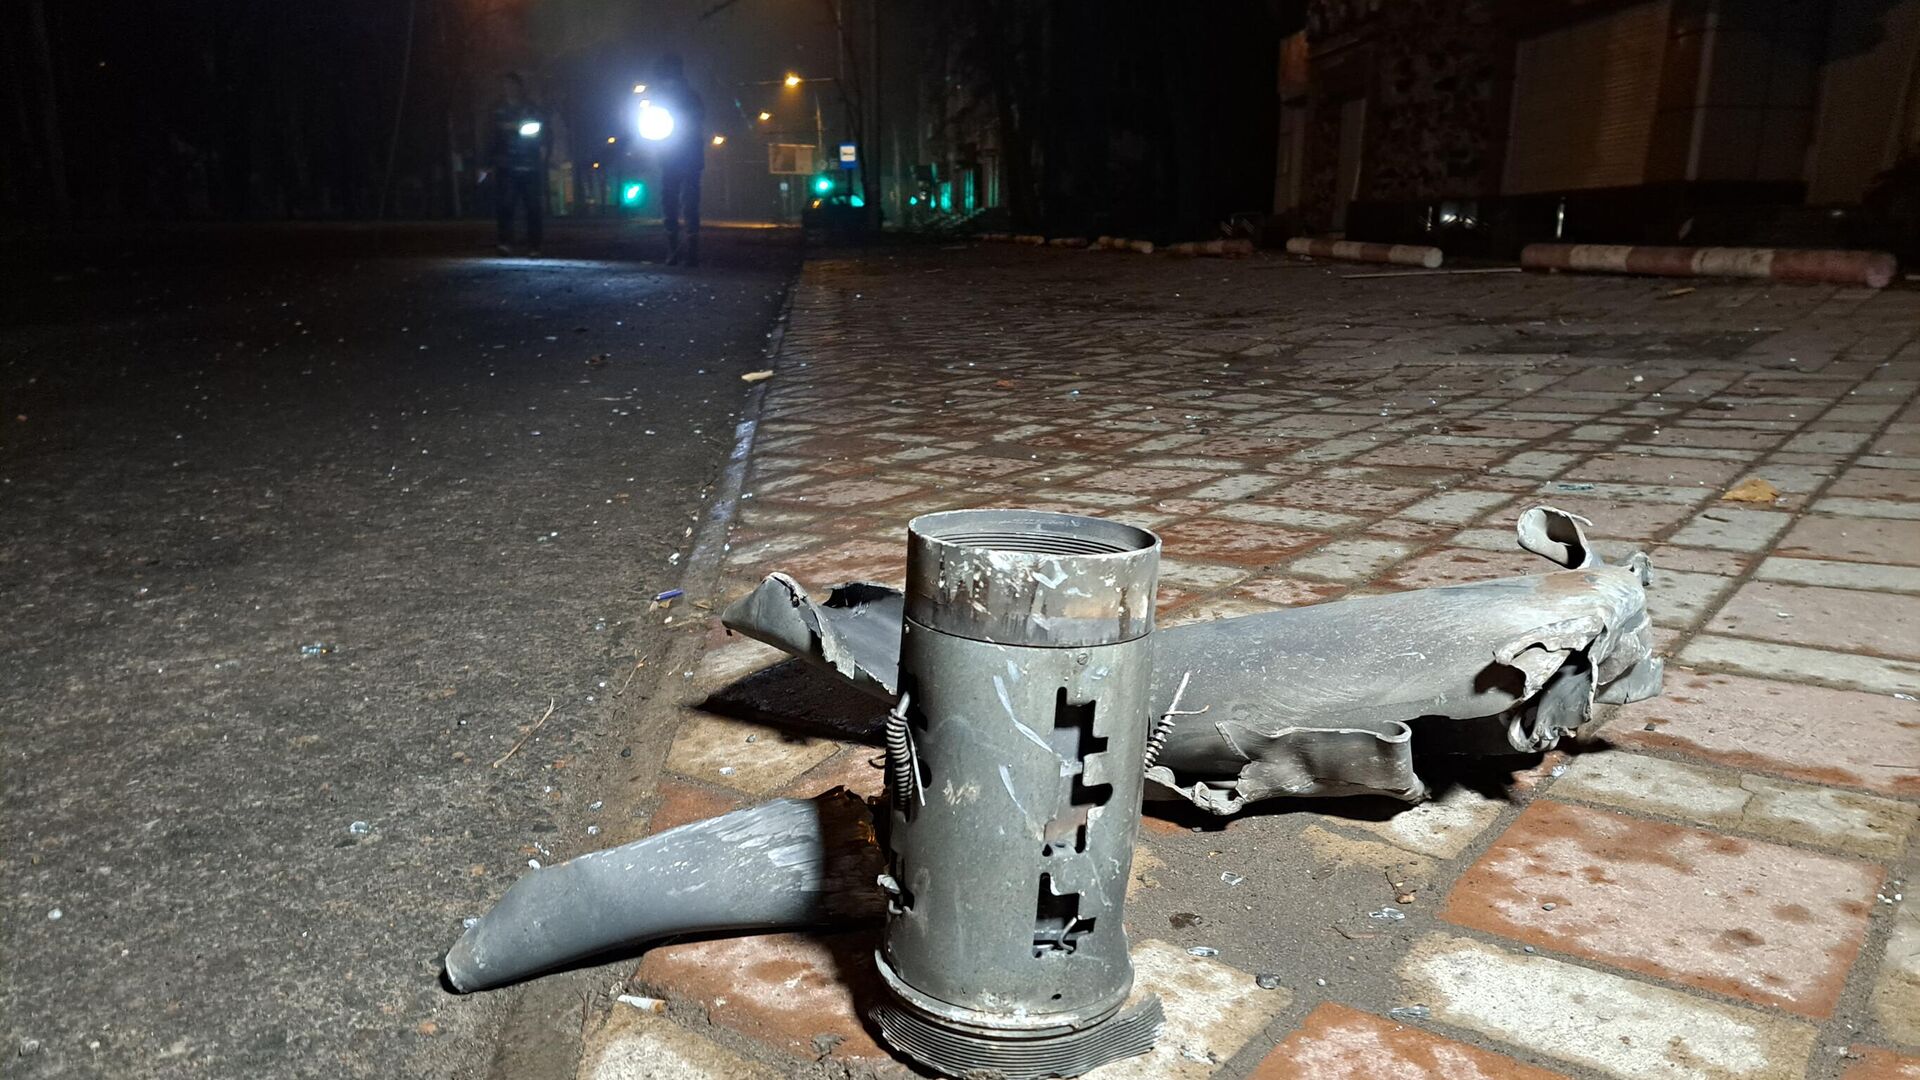 Фрагмент снаряда, найденный после обстрела ВСУ - РИА Новости, 1920, 02.01.2023